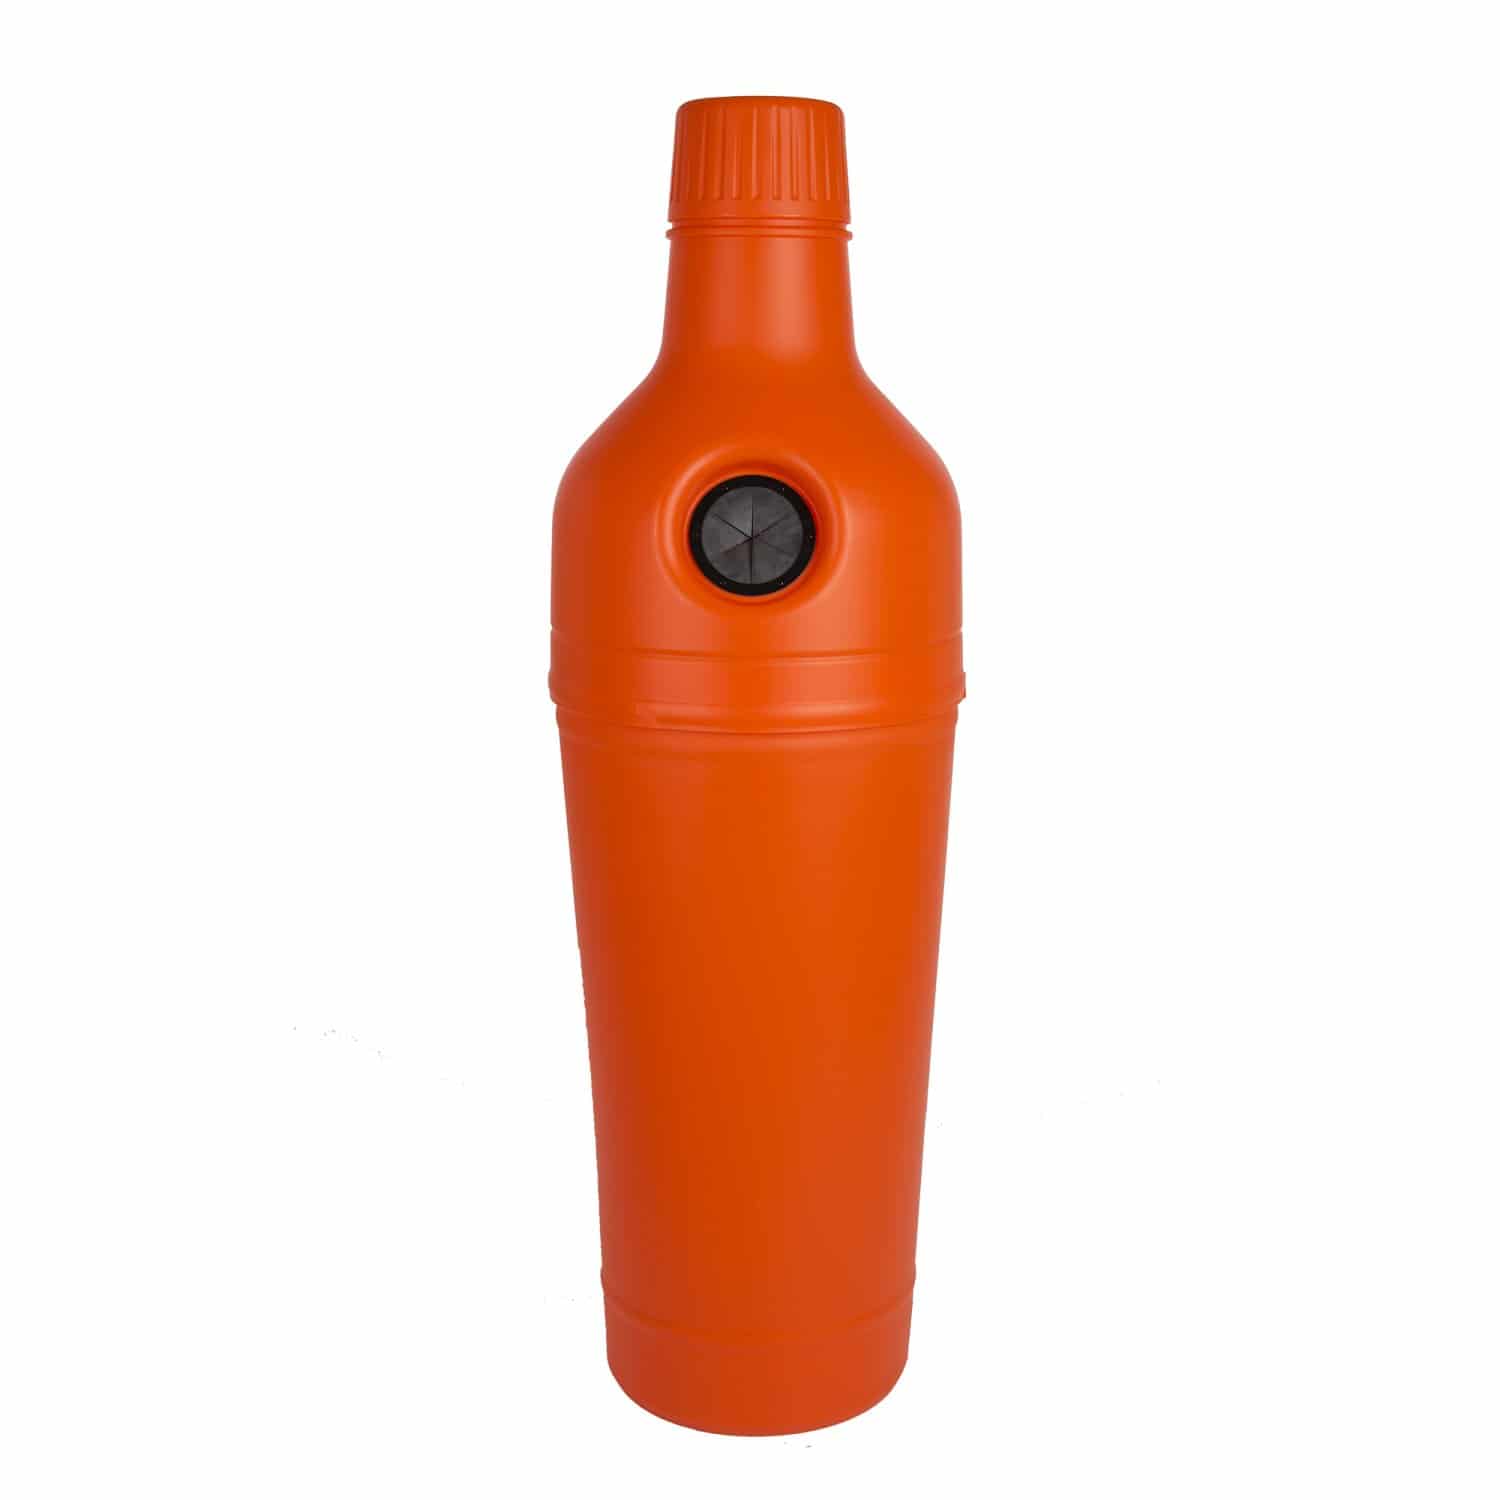 PETman "orange" - 210 liter